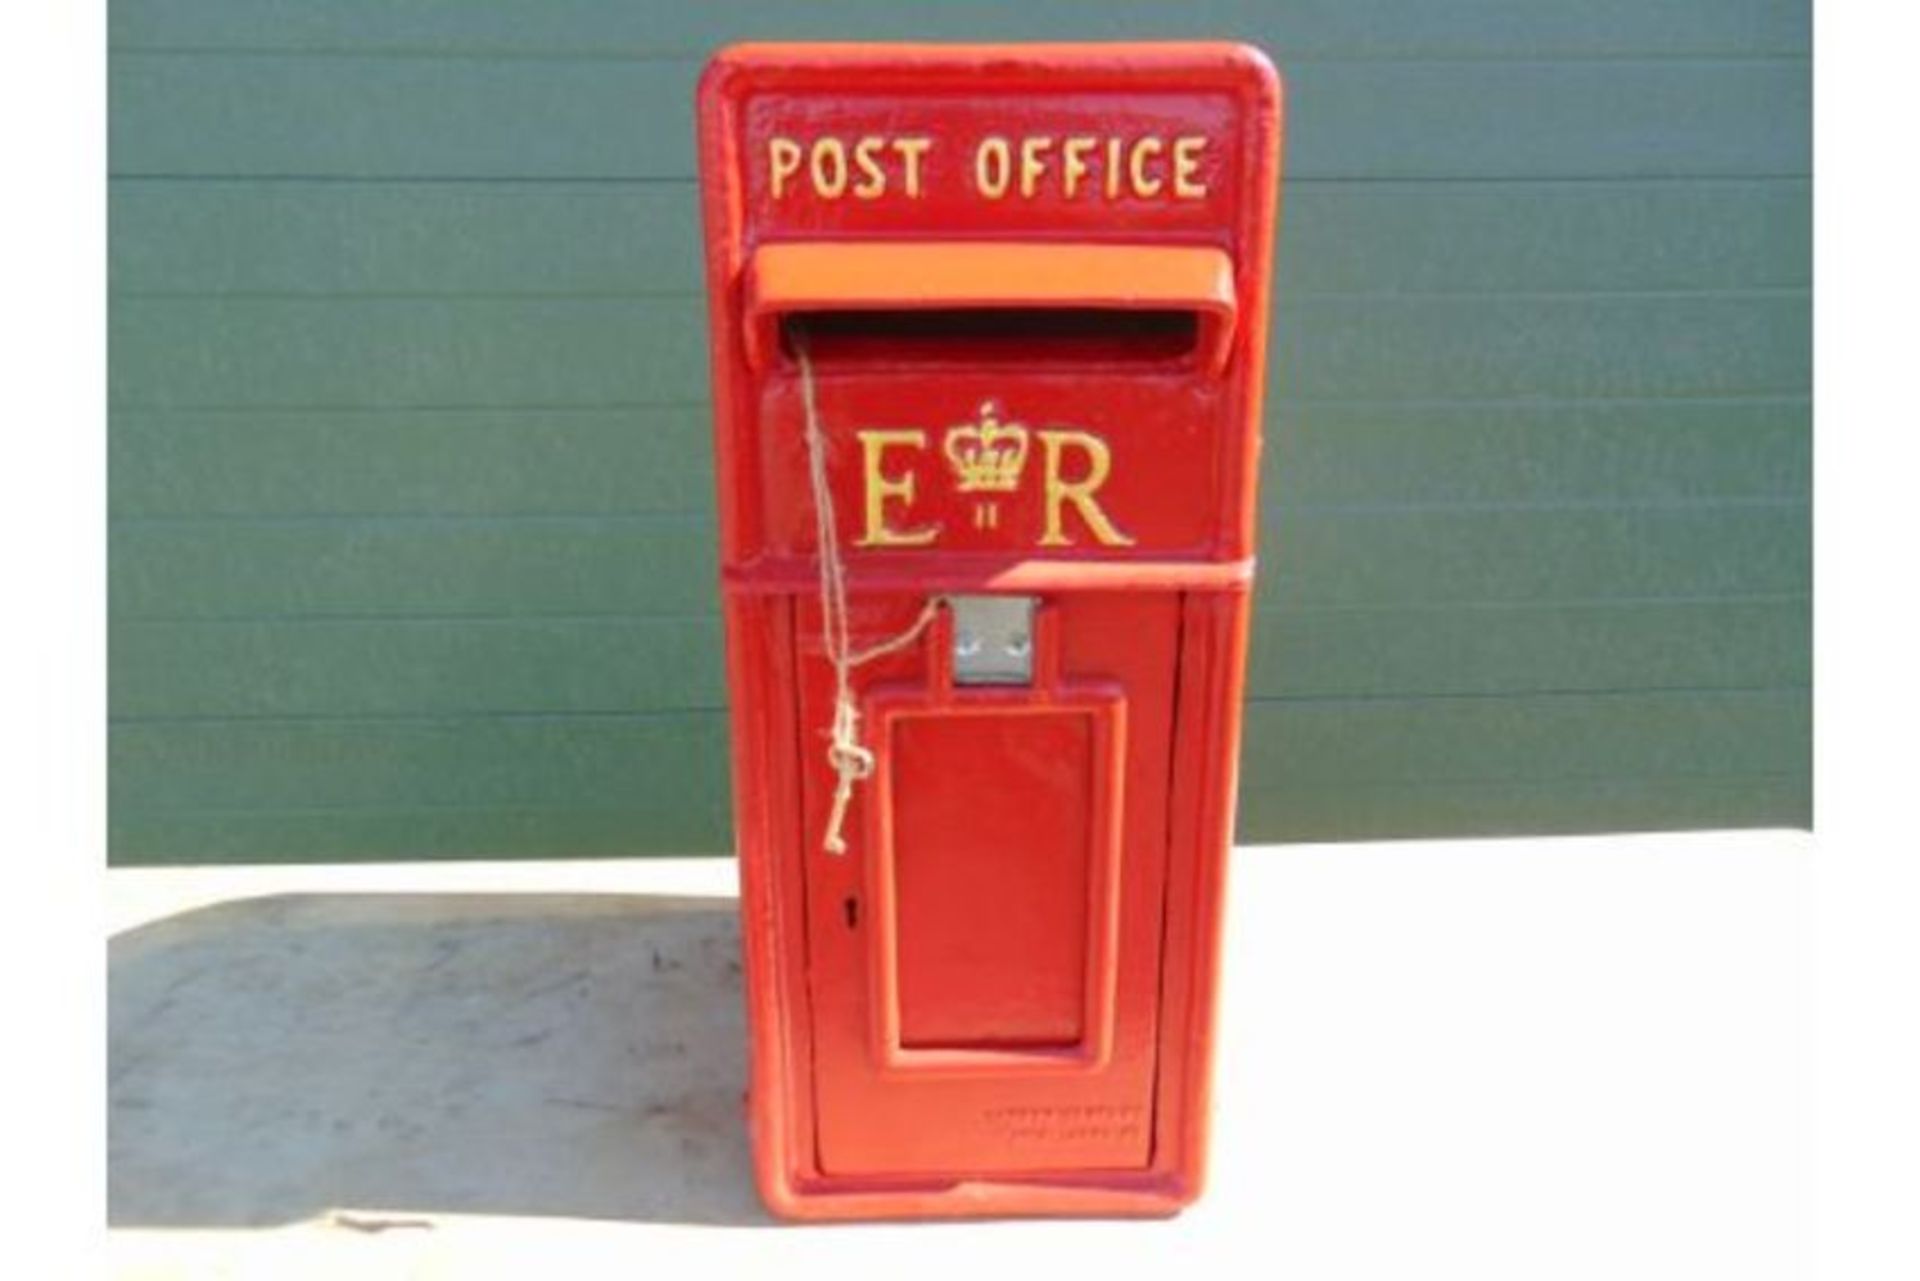 ER Red Post Box